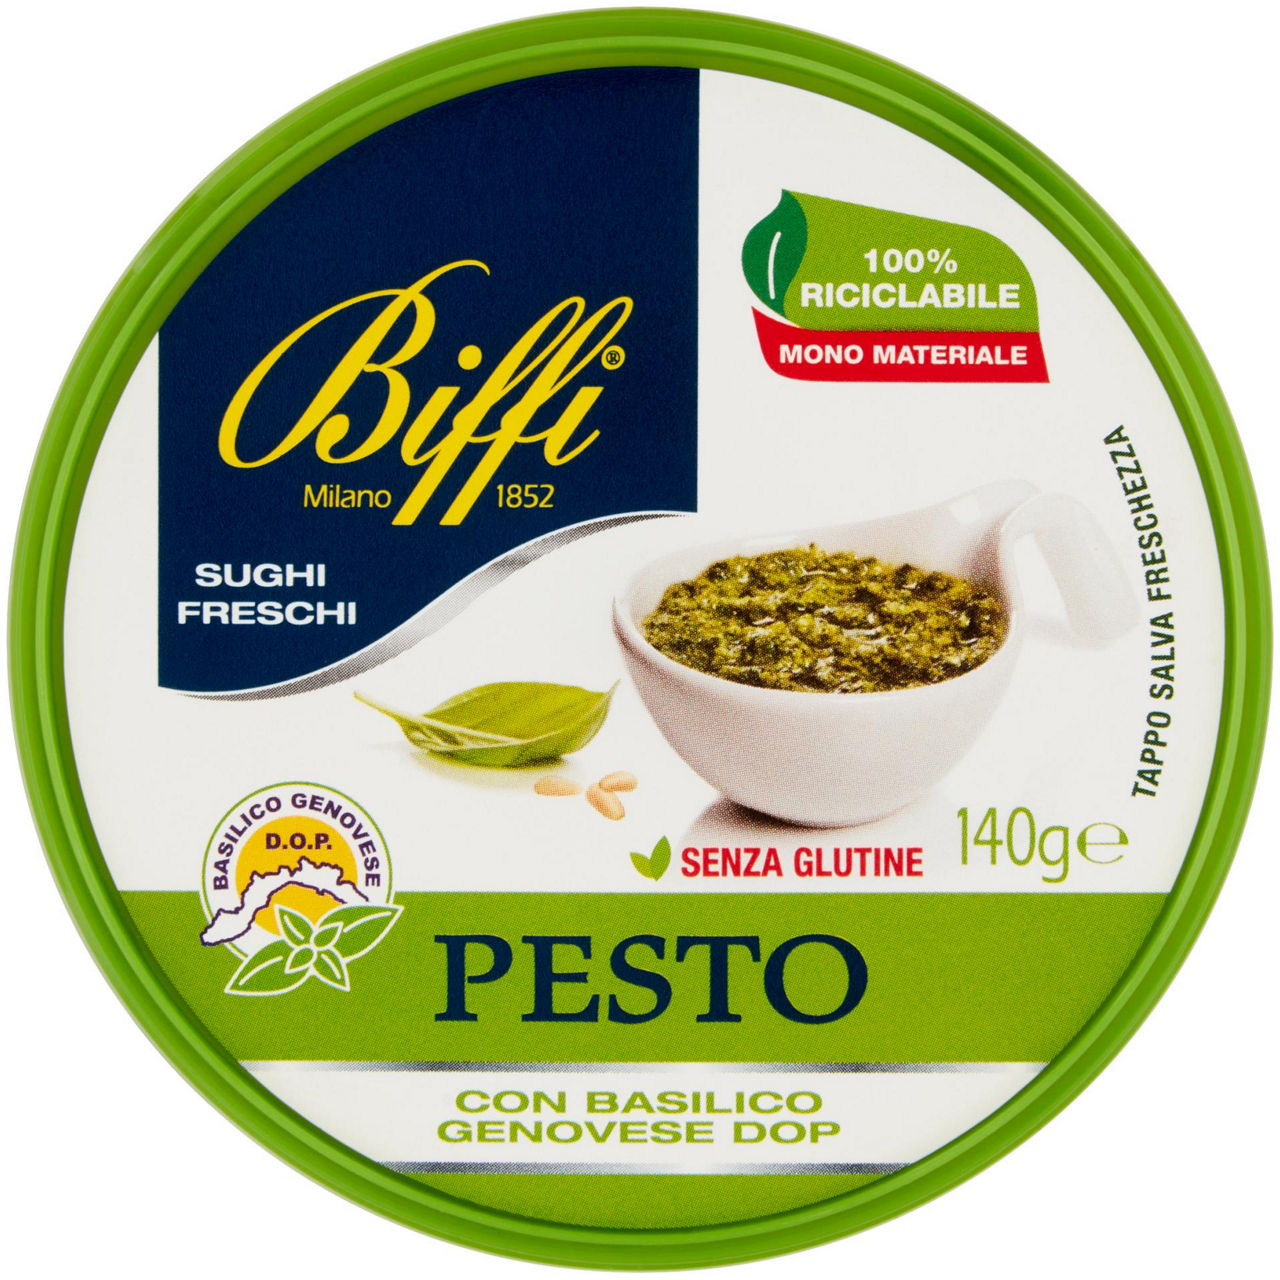 Pesto fresco alla genovese biffi vaschetta g 140